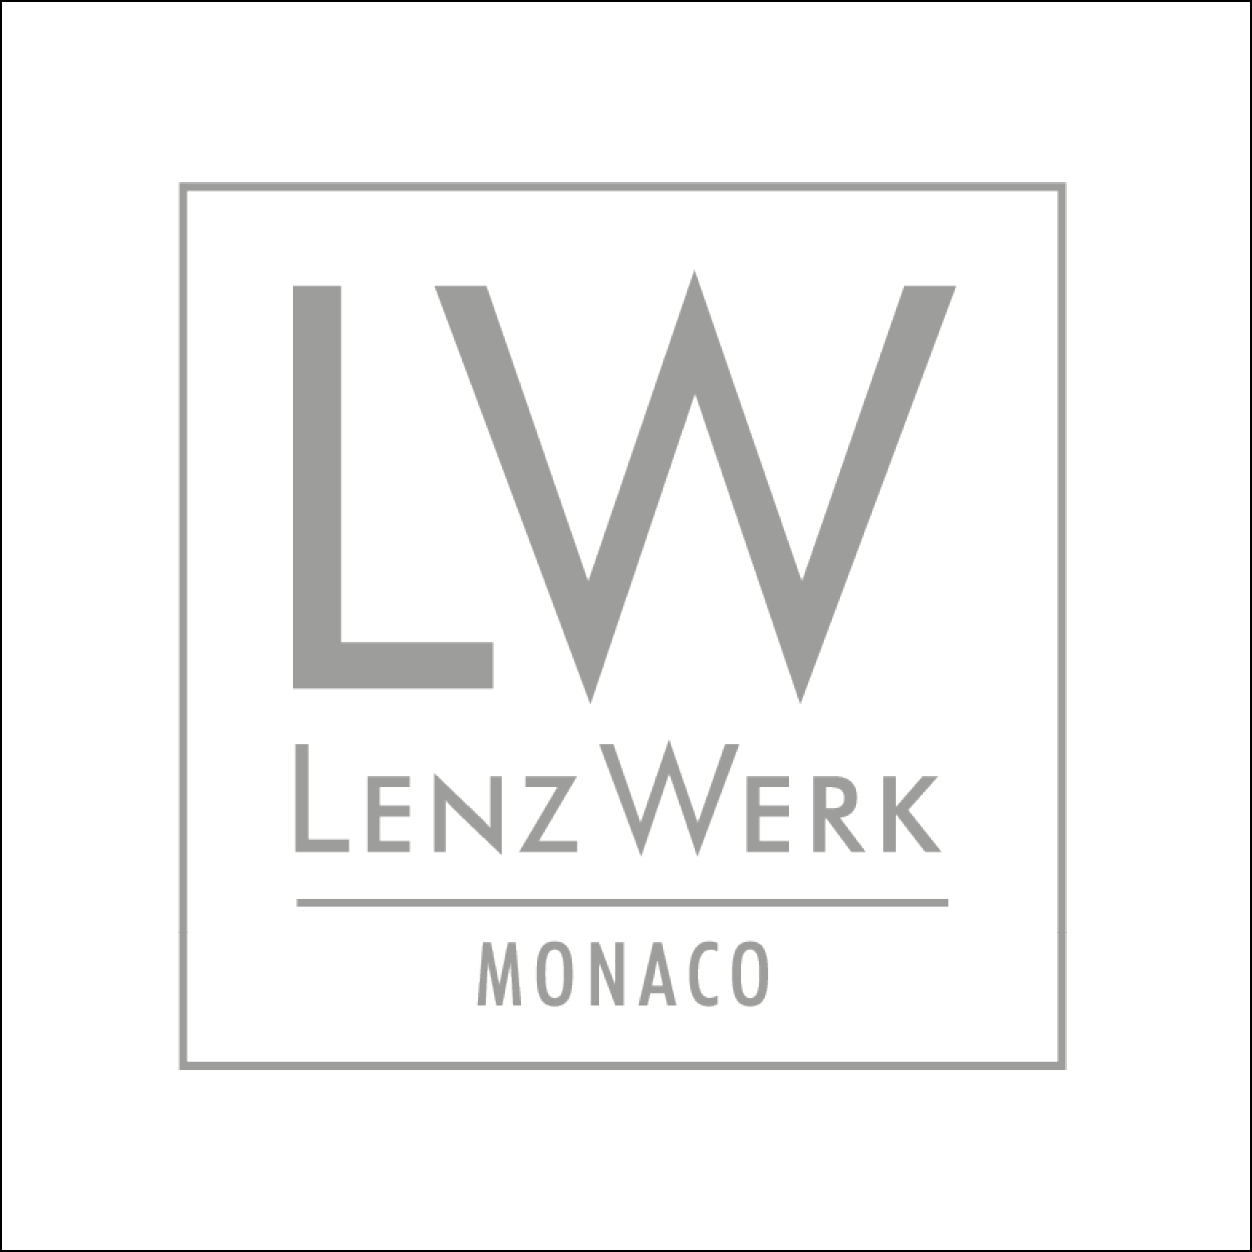 LenzWerk